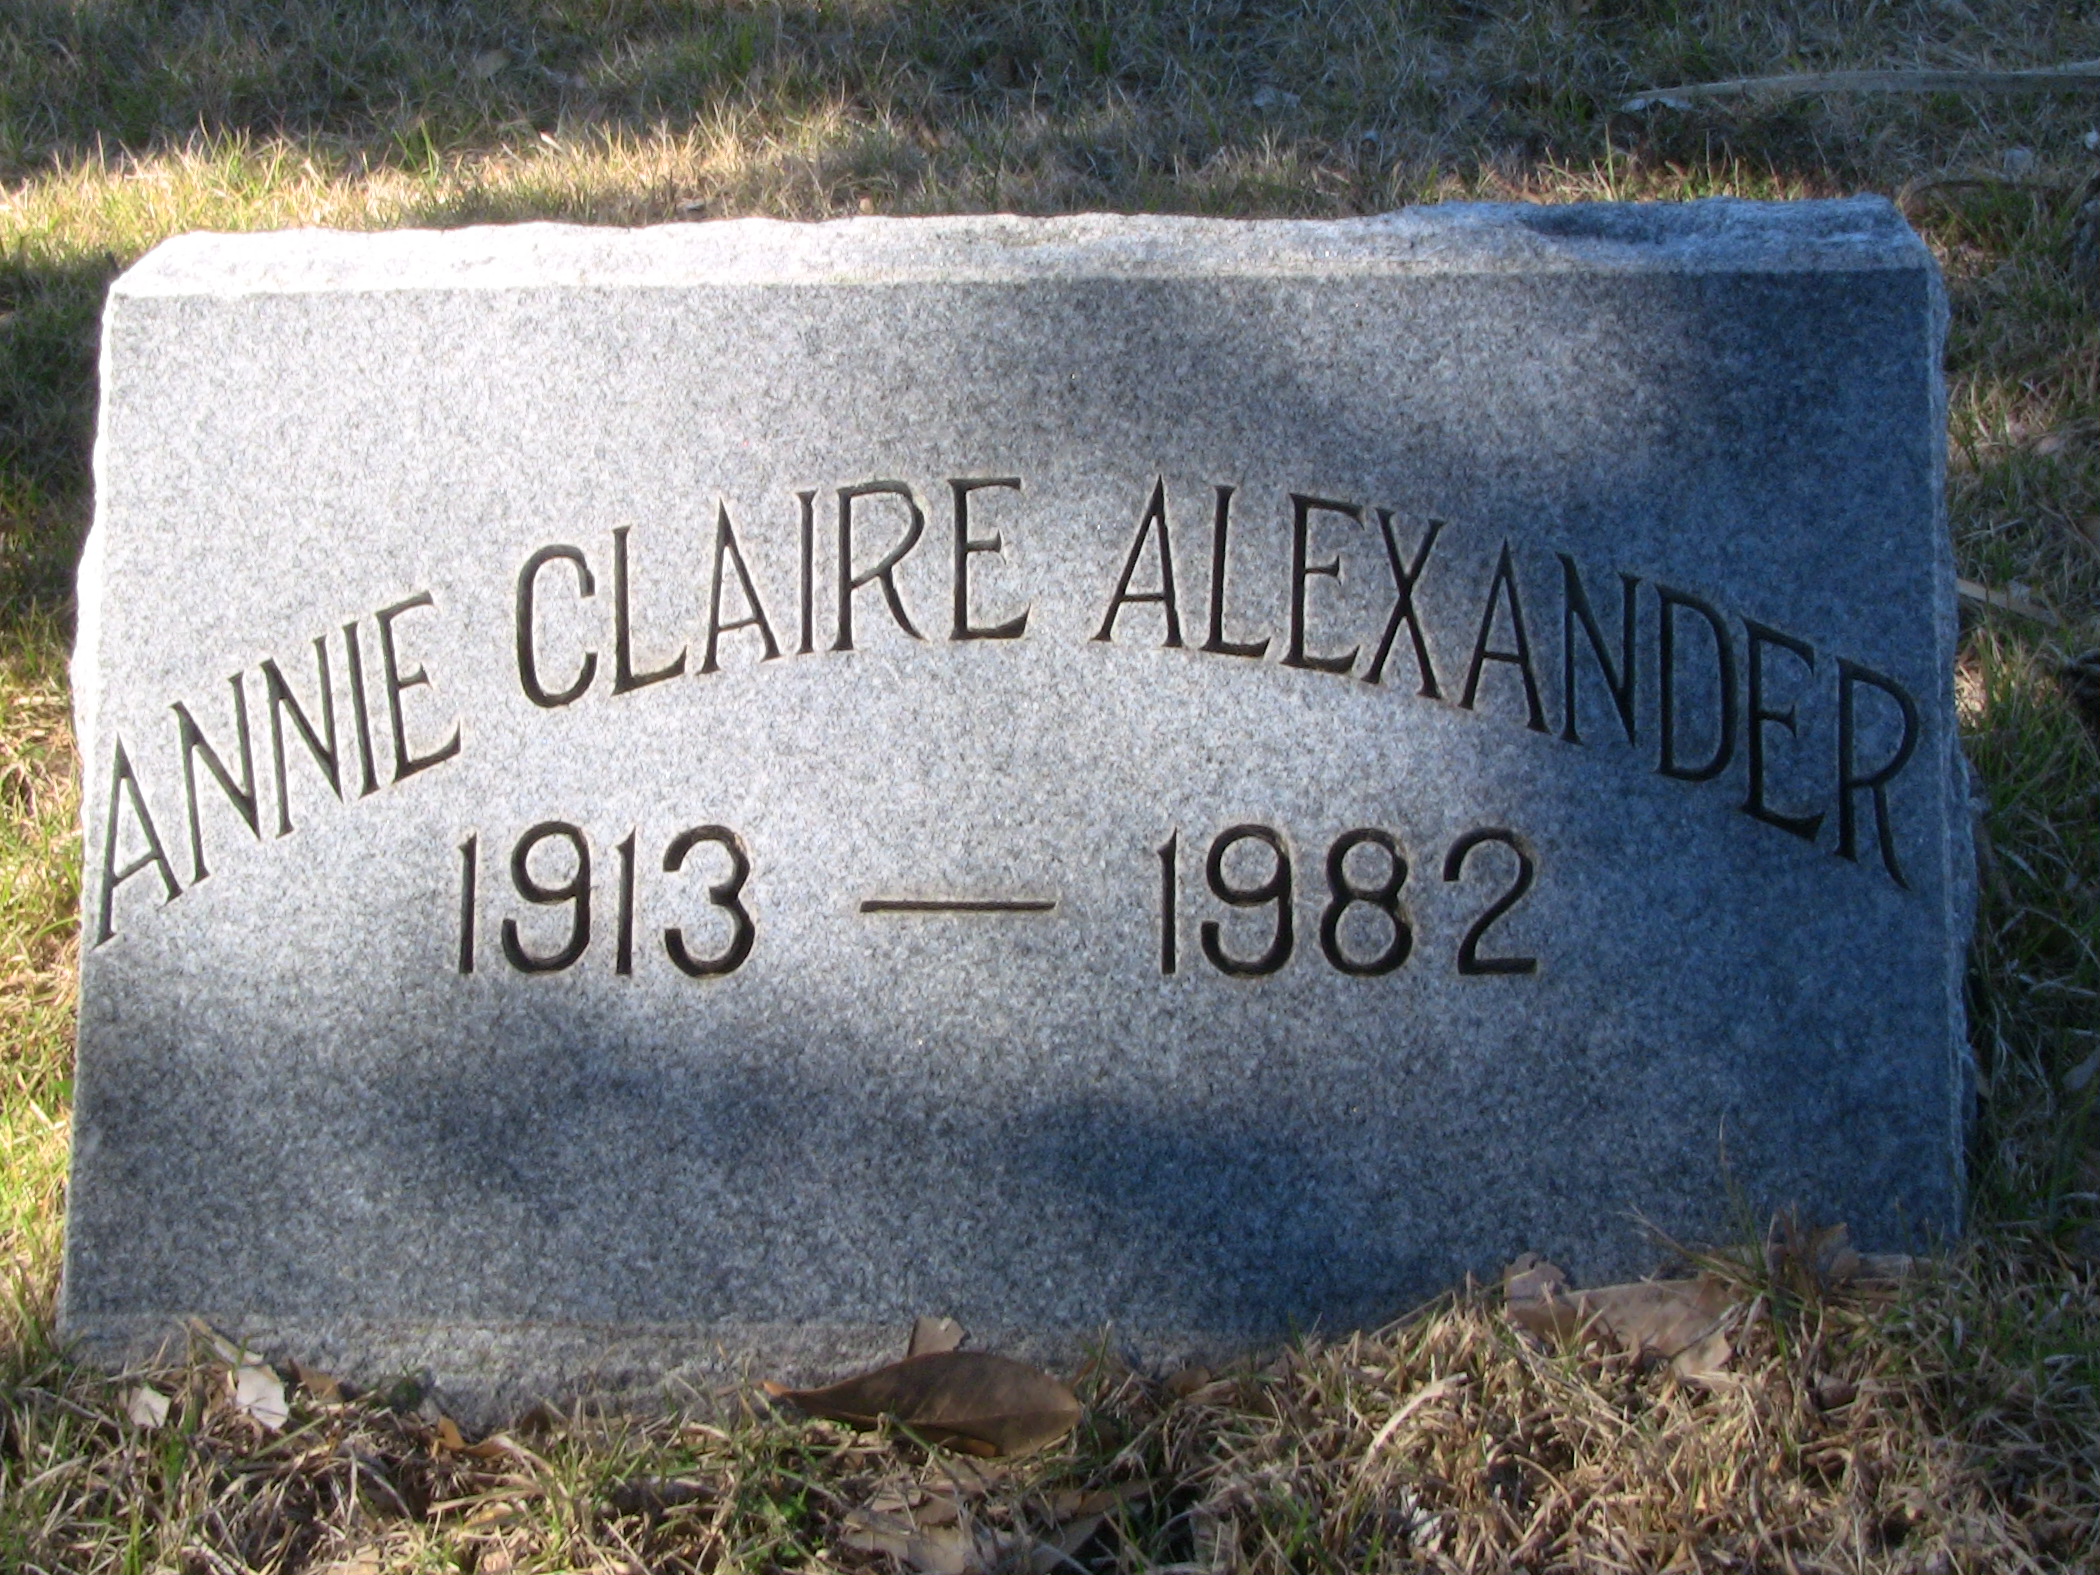 Annie Claire Alexander